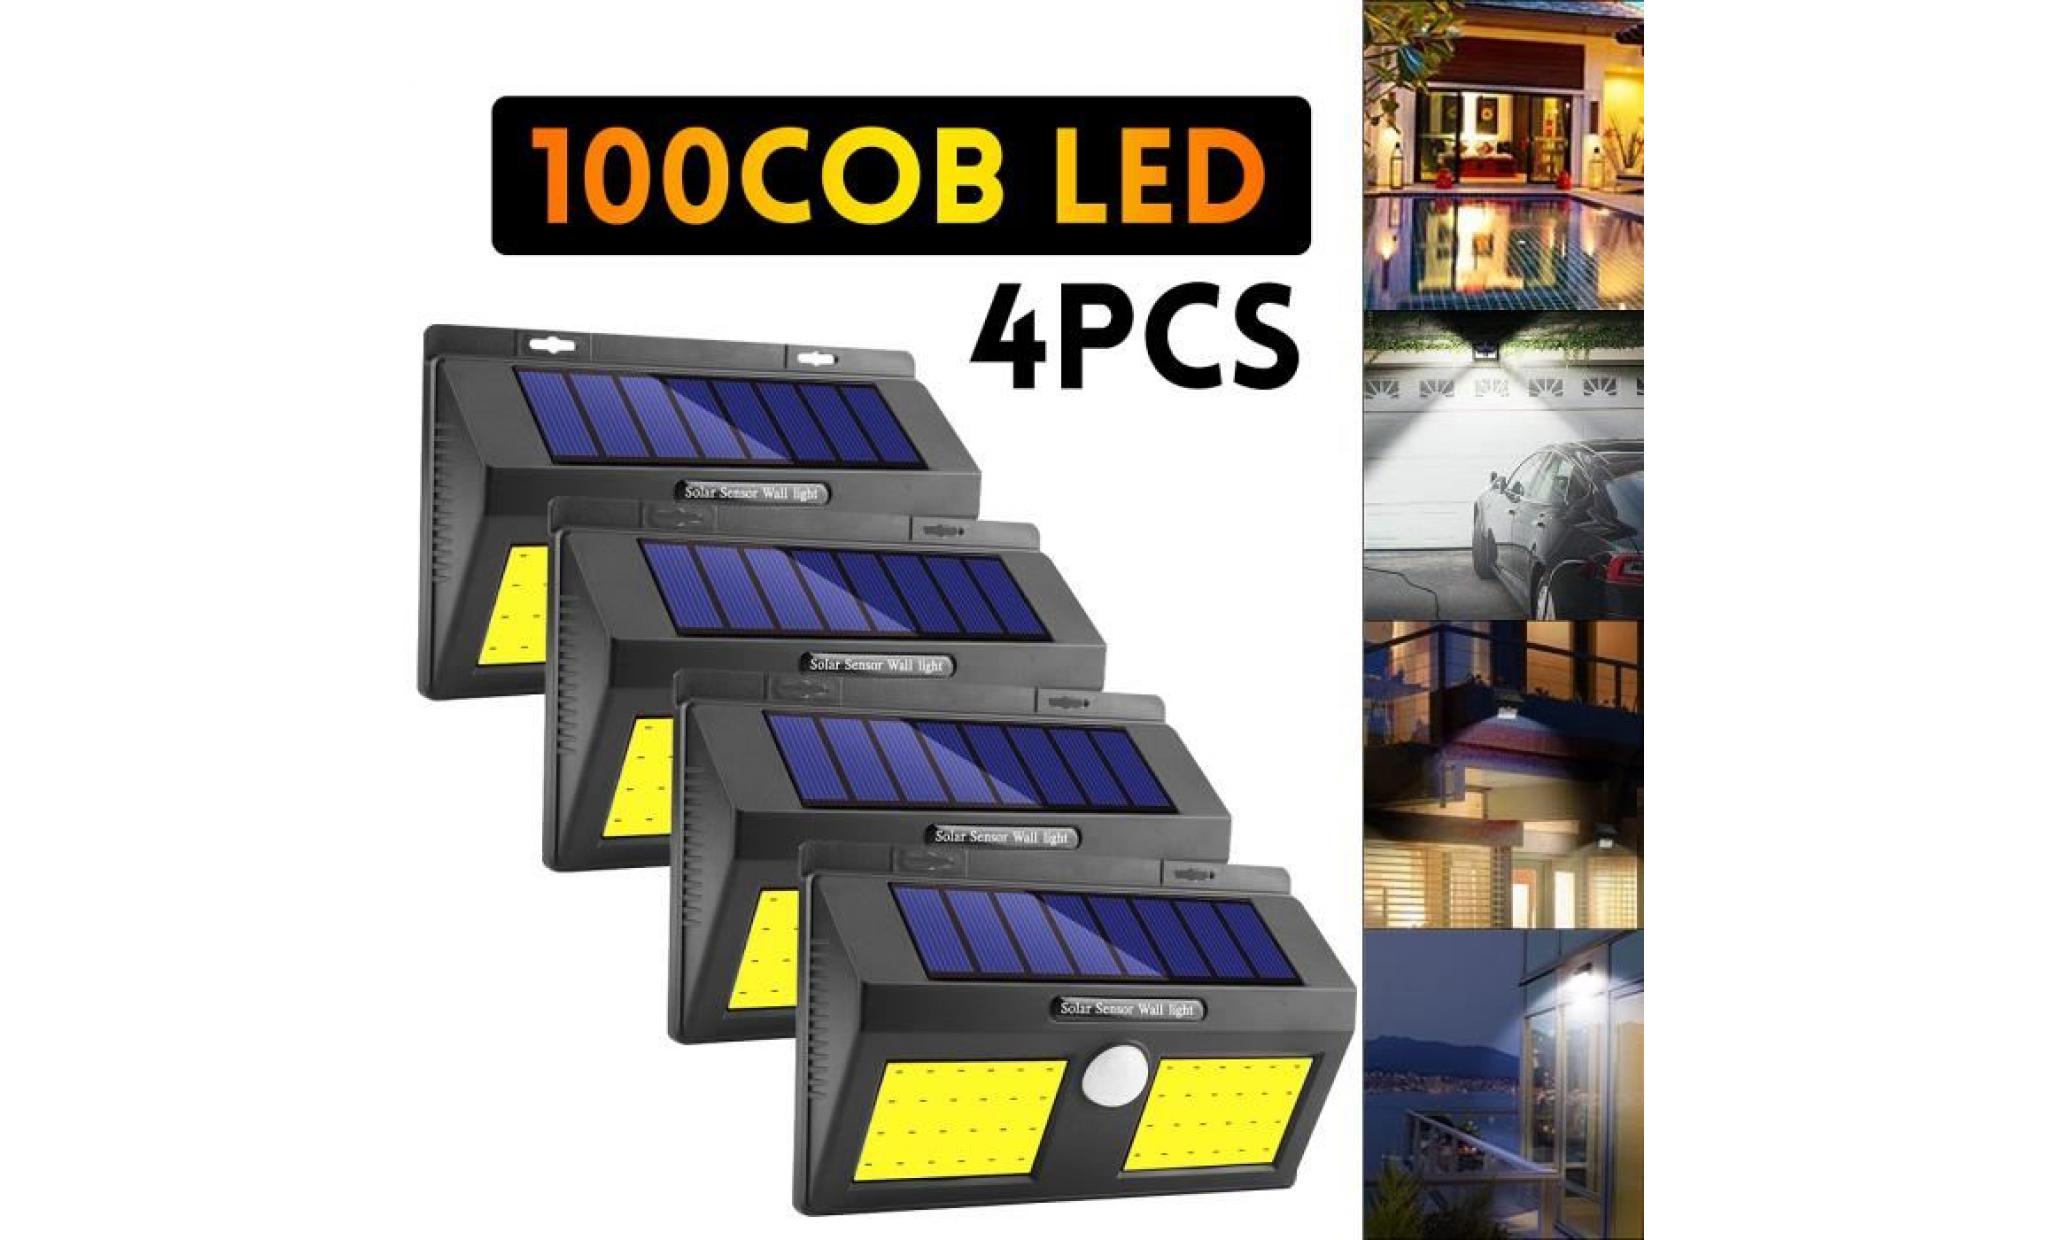 neufu led 4pcs applique murale extérieur lampe solaire etanche eclairage extérieur 100cob 1200lm